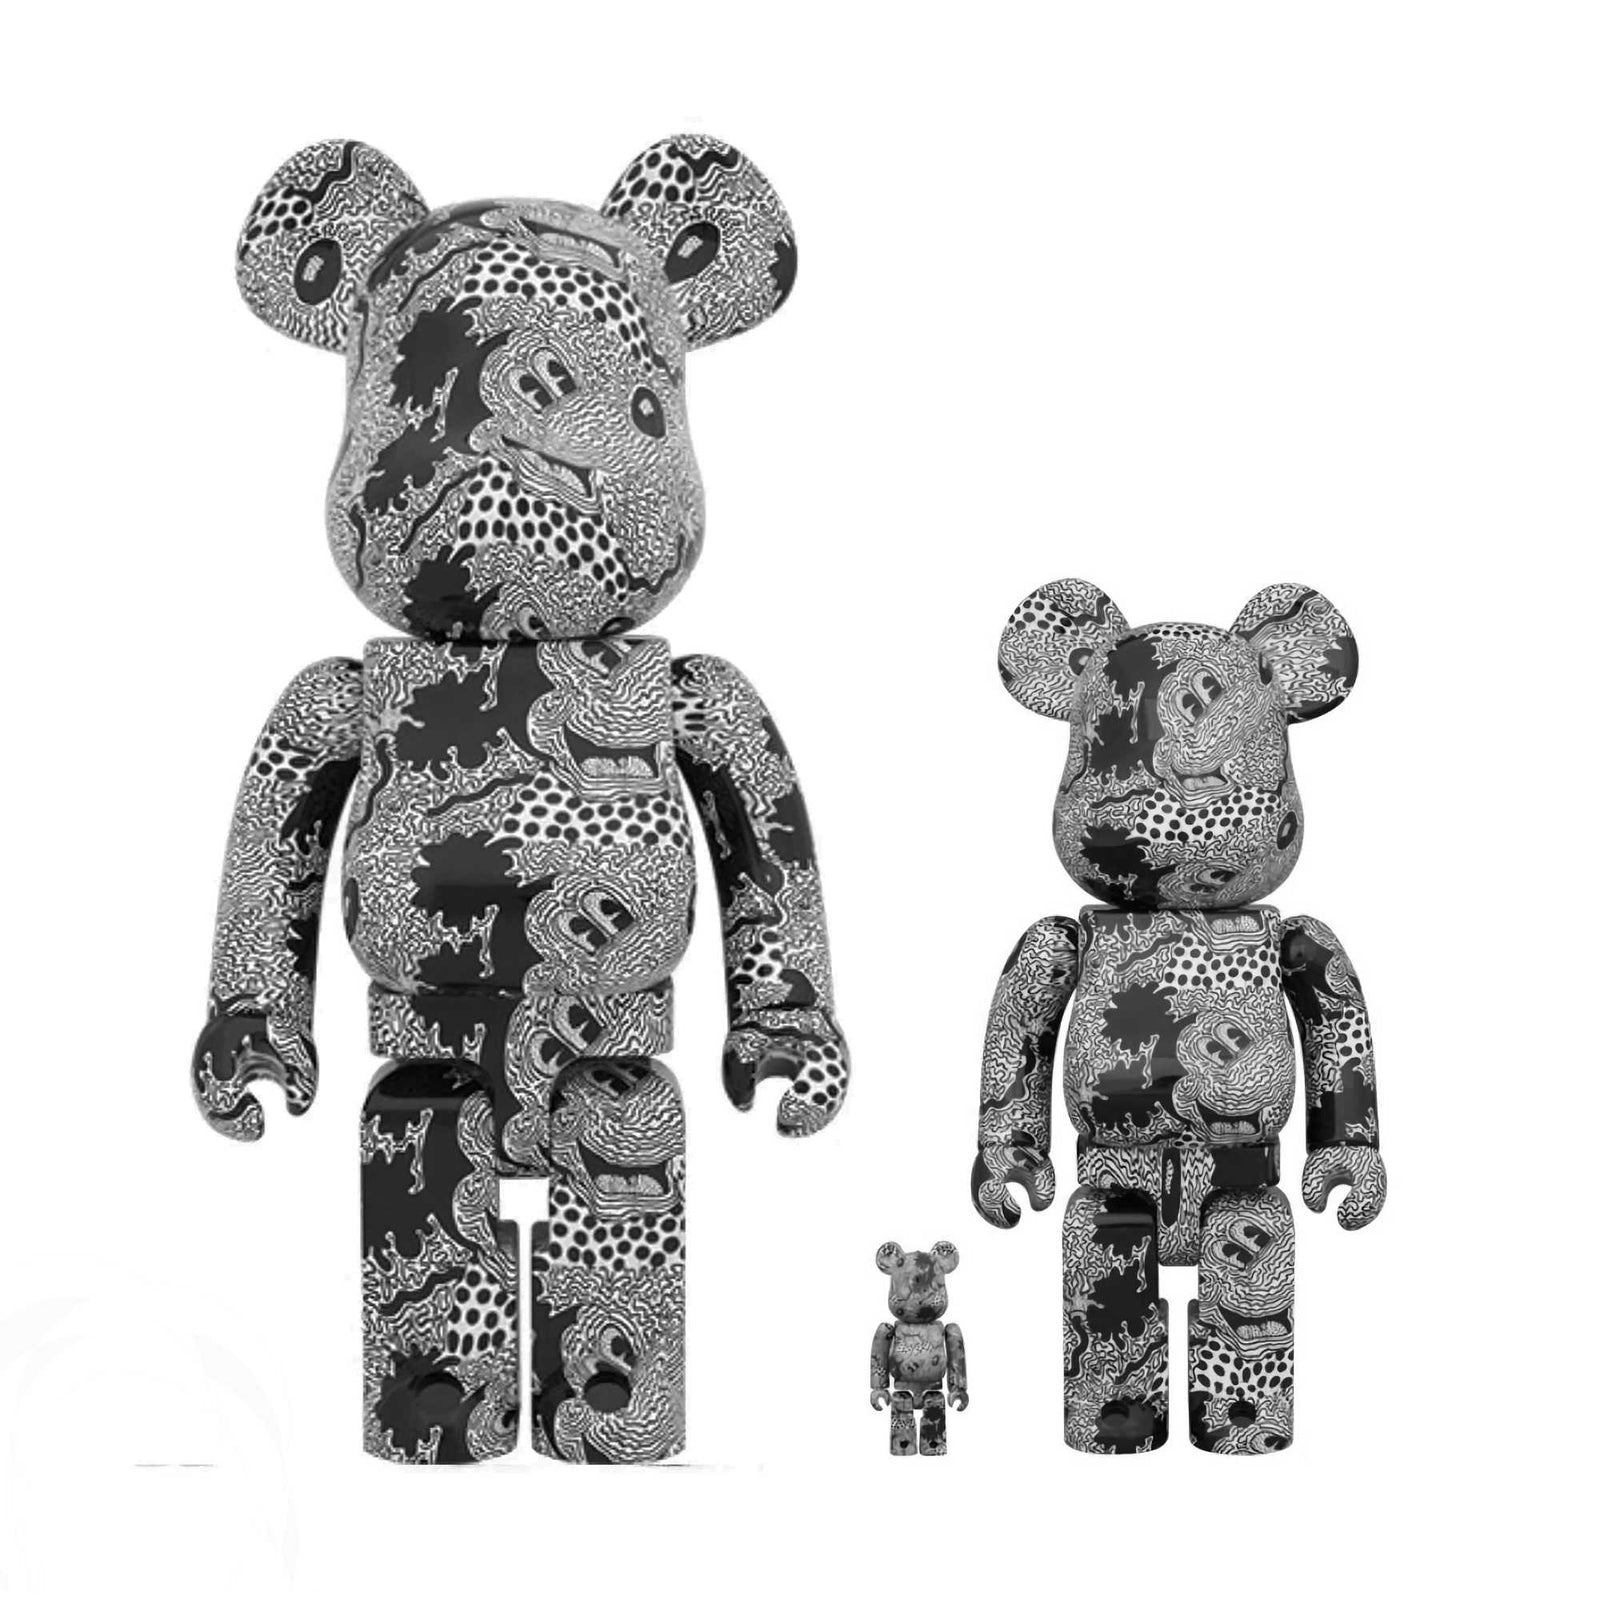 ベアブリックKeith Haring × Disney Mickey Mouse安心してください